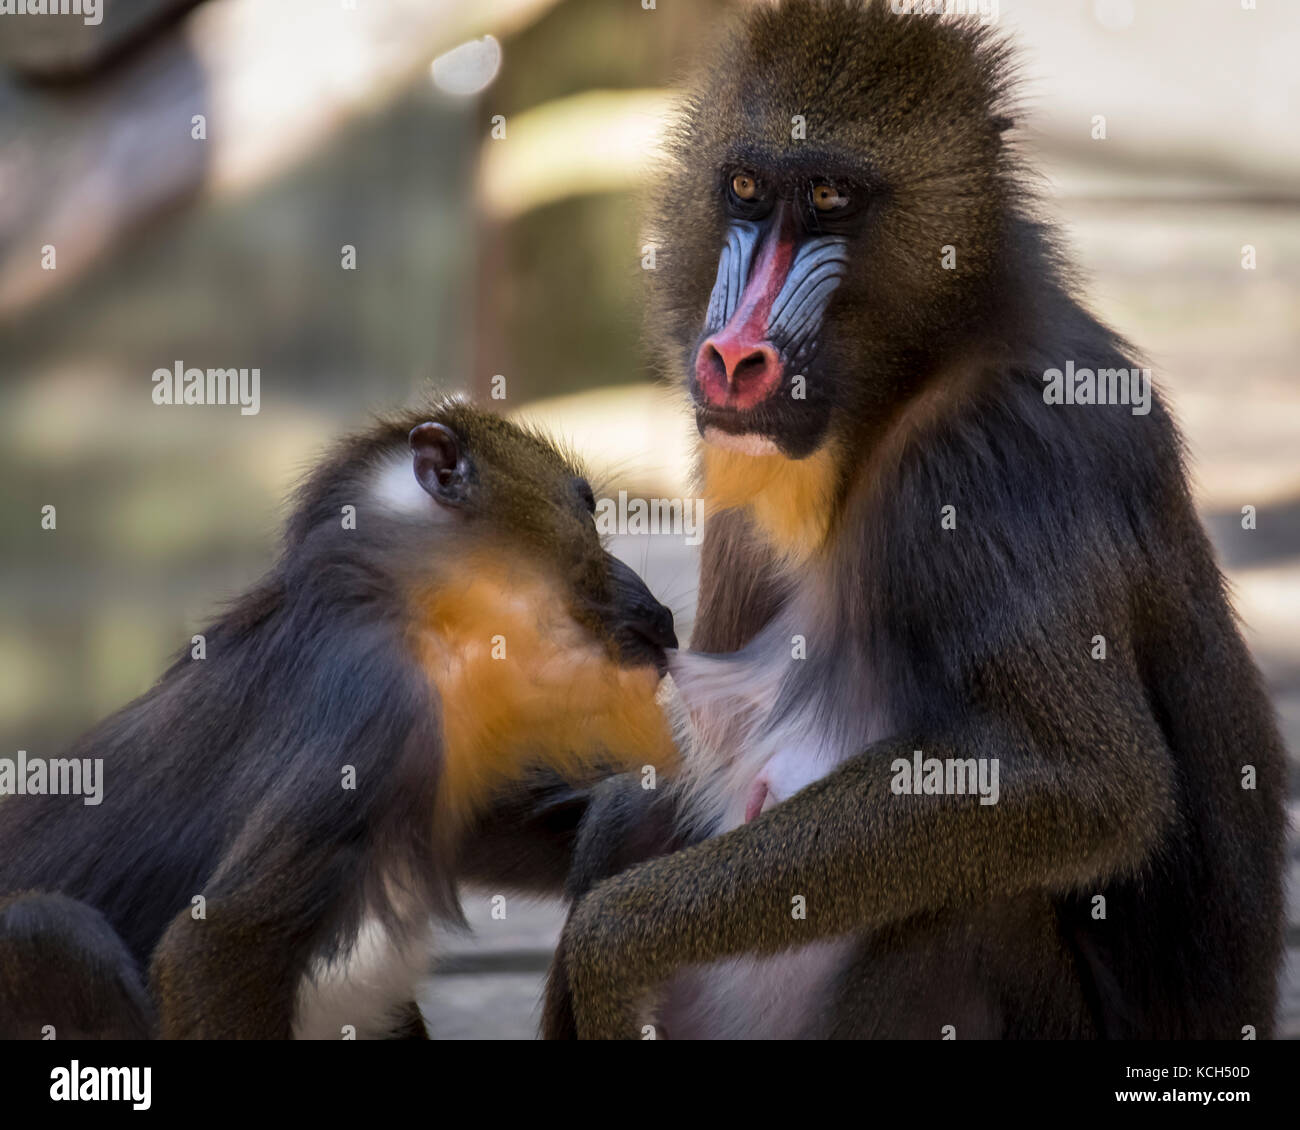 Mandrill monkey Stock Photo